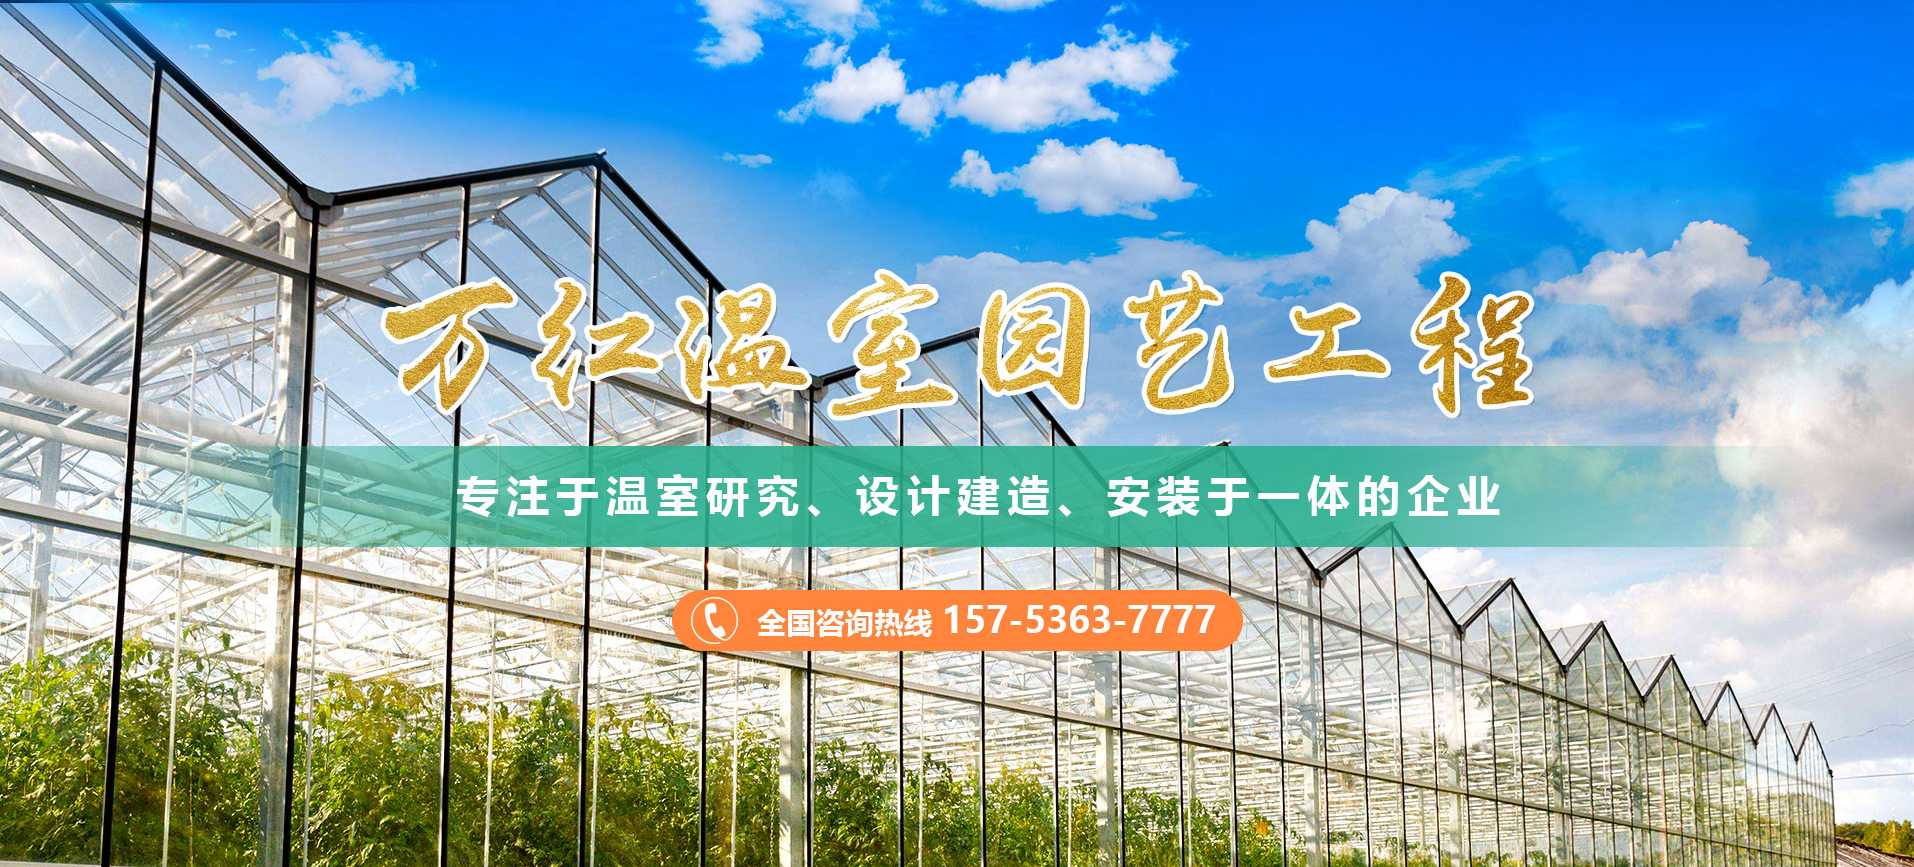 青州市萬紅溫室園藝工程有限公司